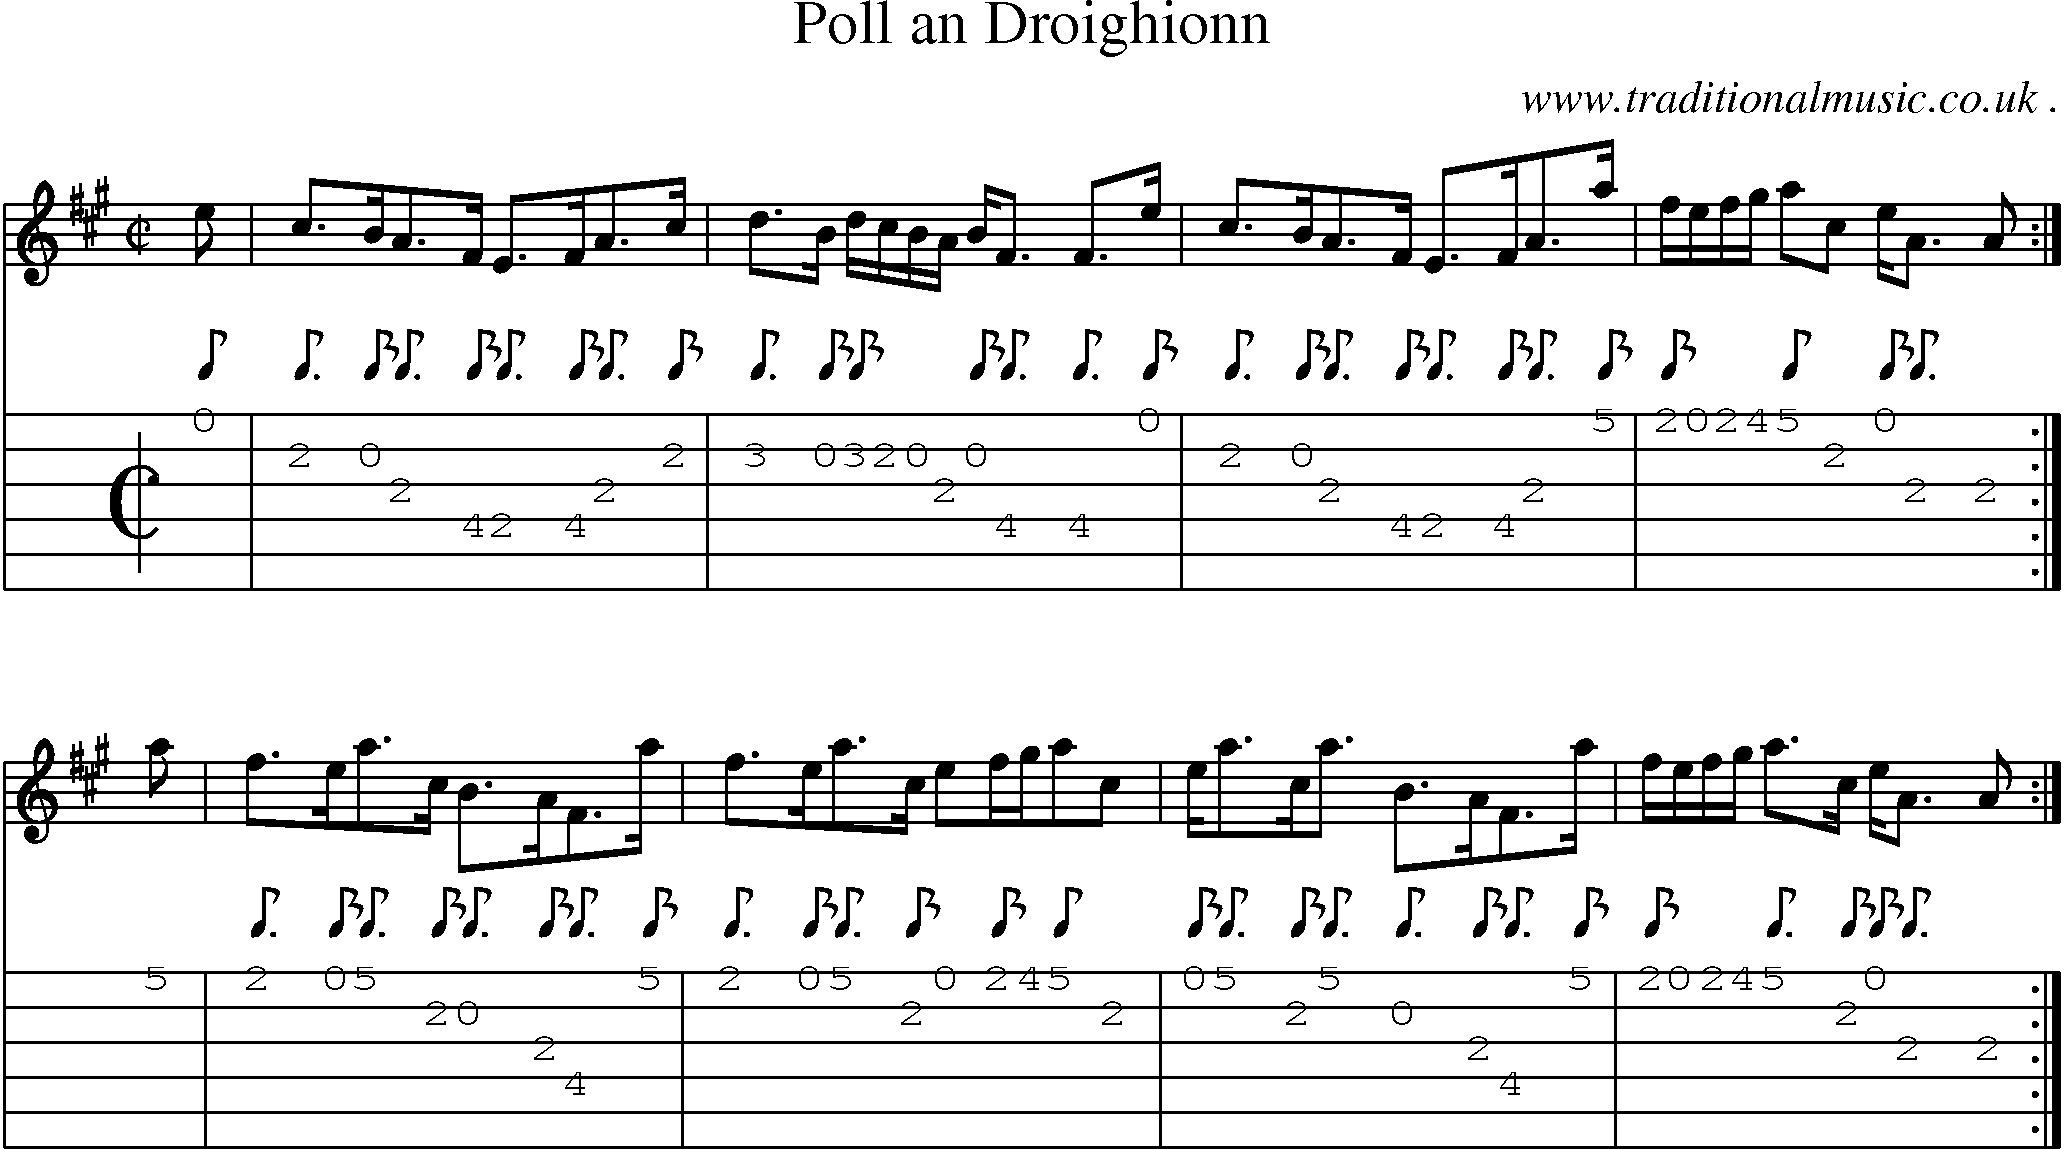 Sheet-music  score, Chords and Guitar Tabs for Poll An Droighionn